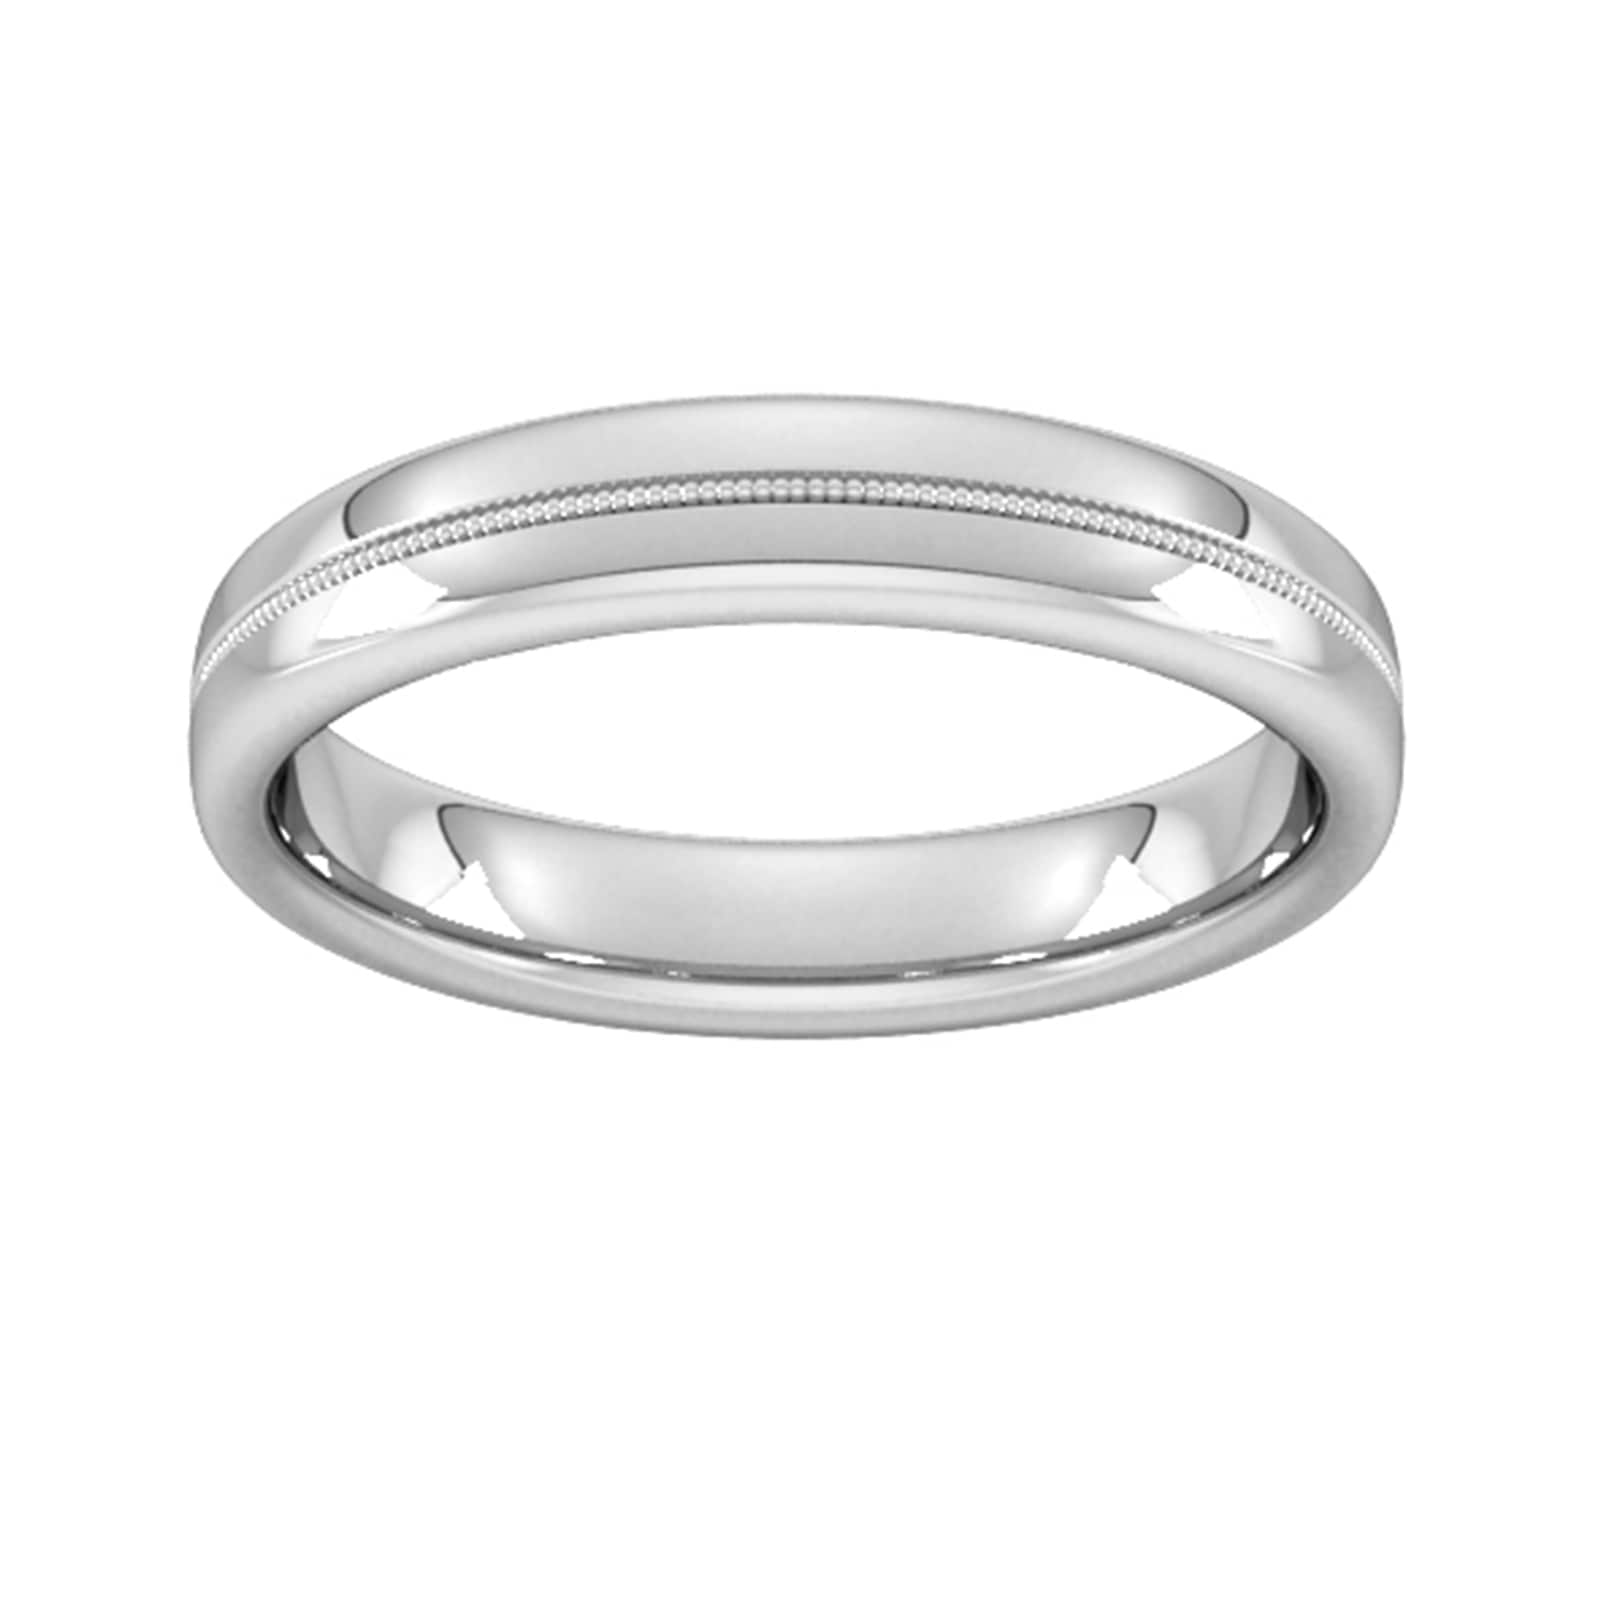 4mm Slight Court Heavy Milgrain Centre Wedding Ring In 18 Carat White Gold - Ring Size T